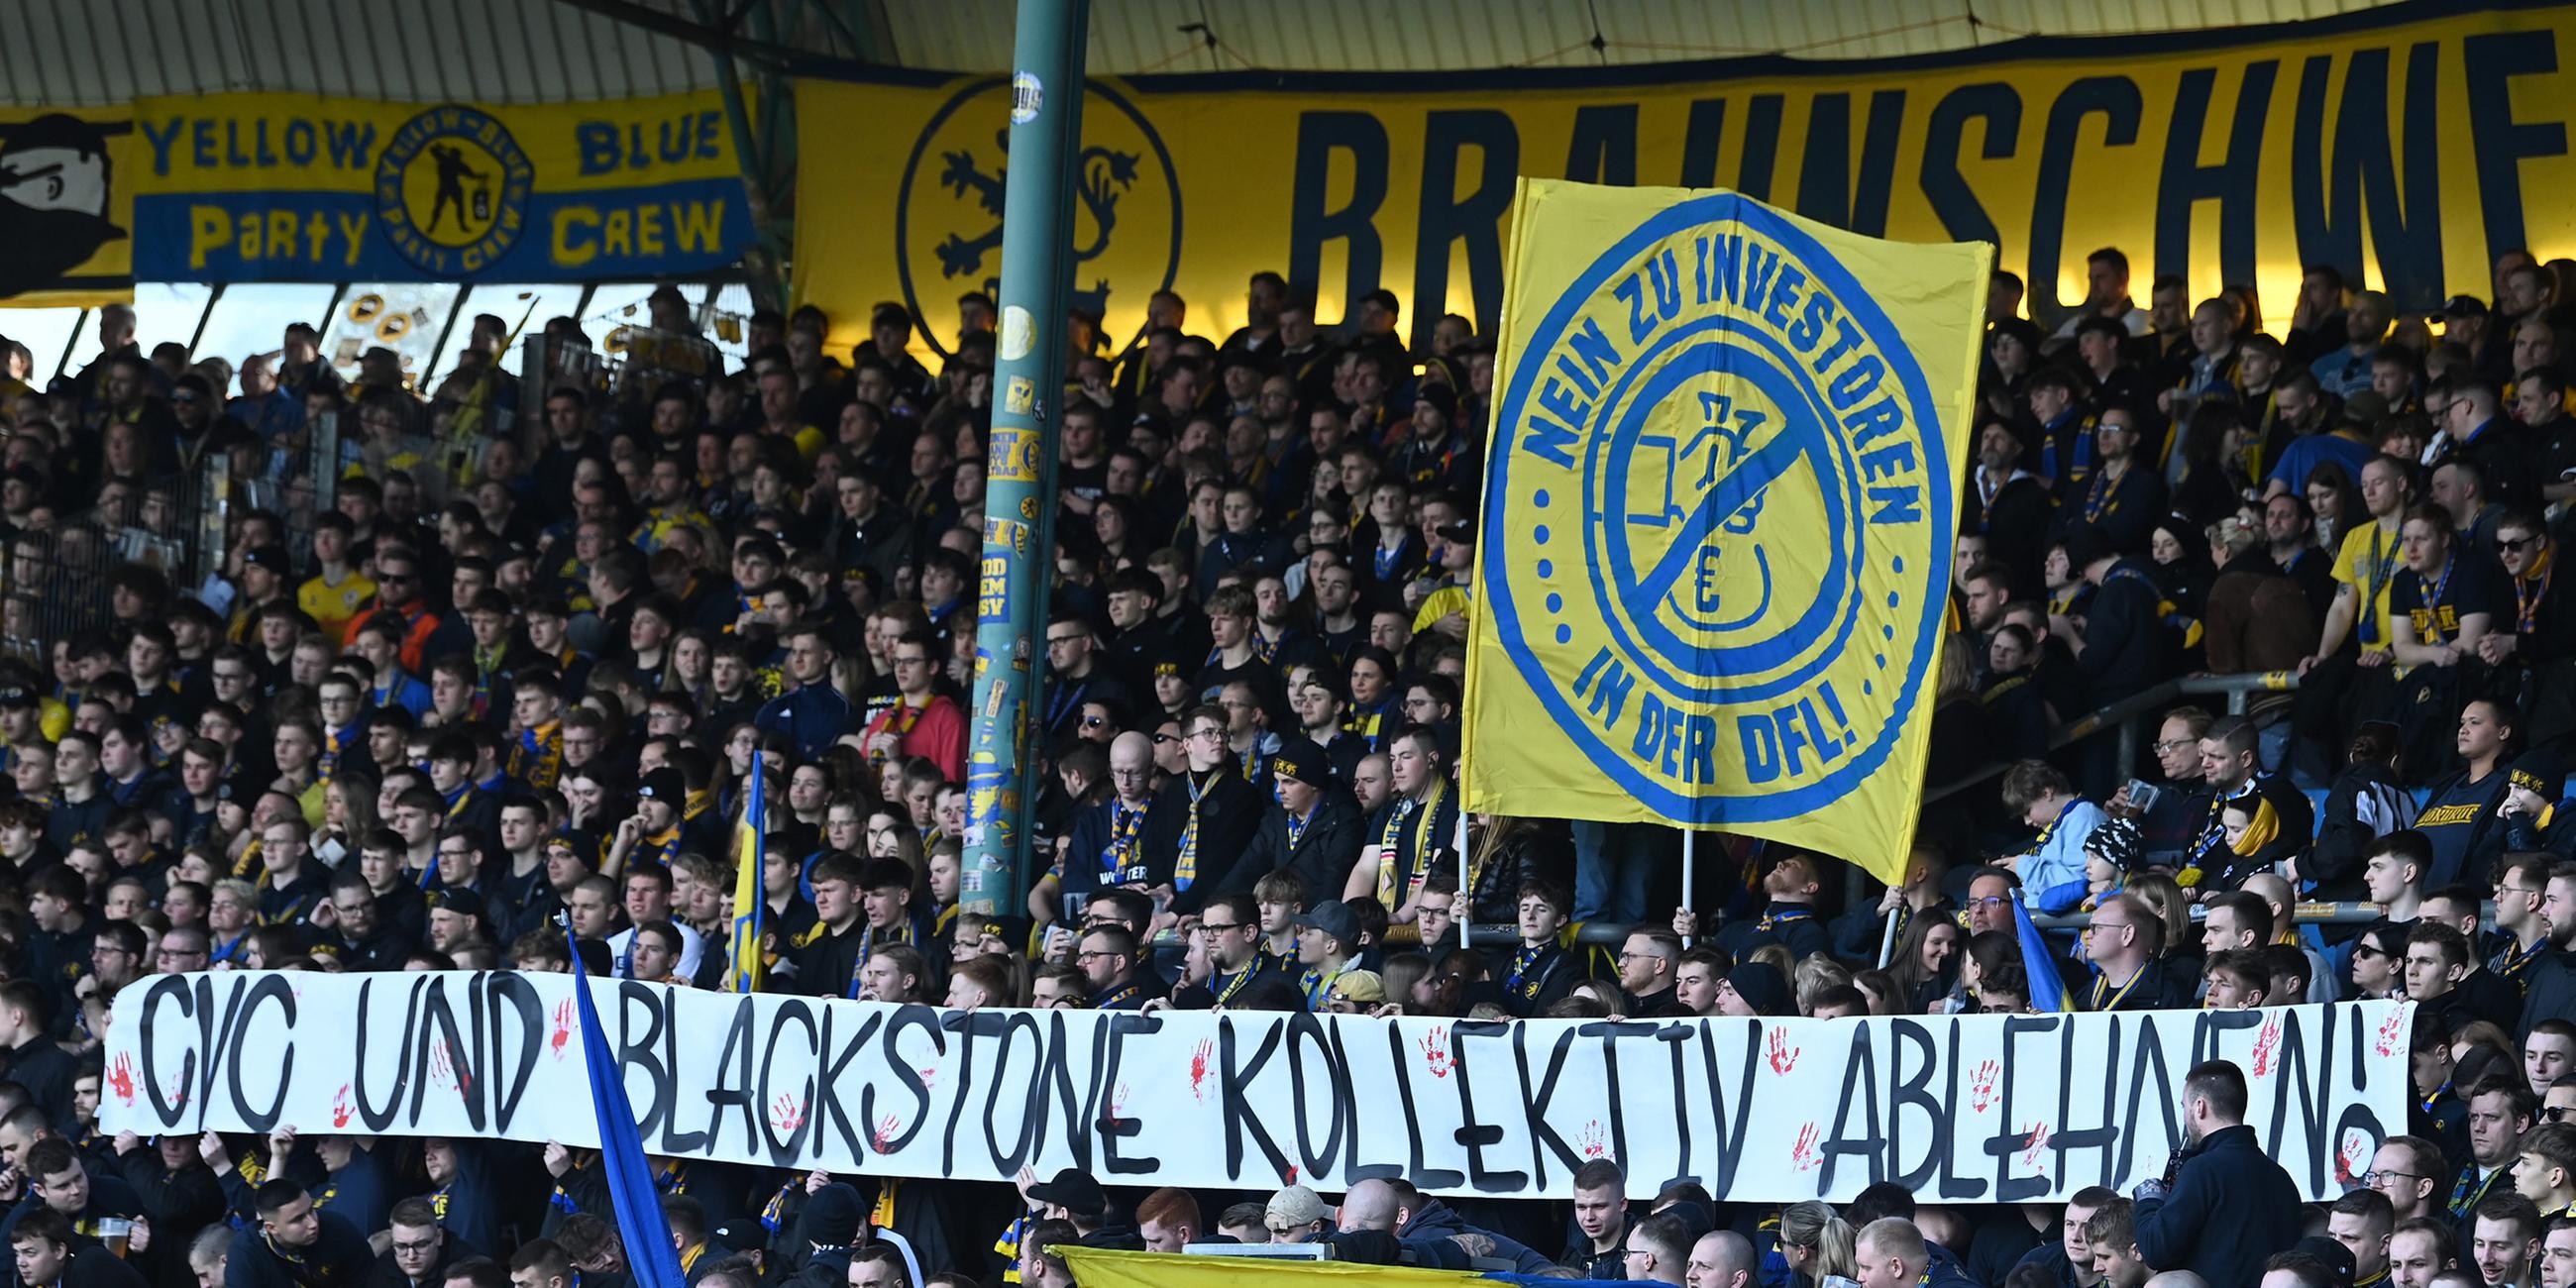 Braunschweiger Fans halten zum Beginn der Partie Banner mit der Aufschrift "CVC und Blackstone kollektiv ablehnen!".